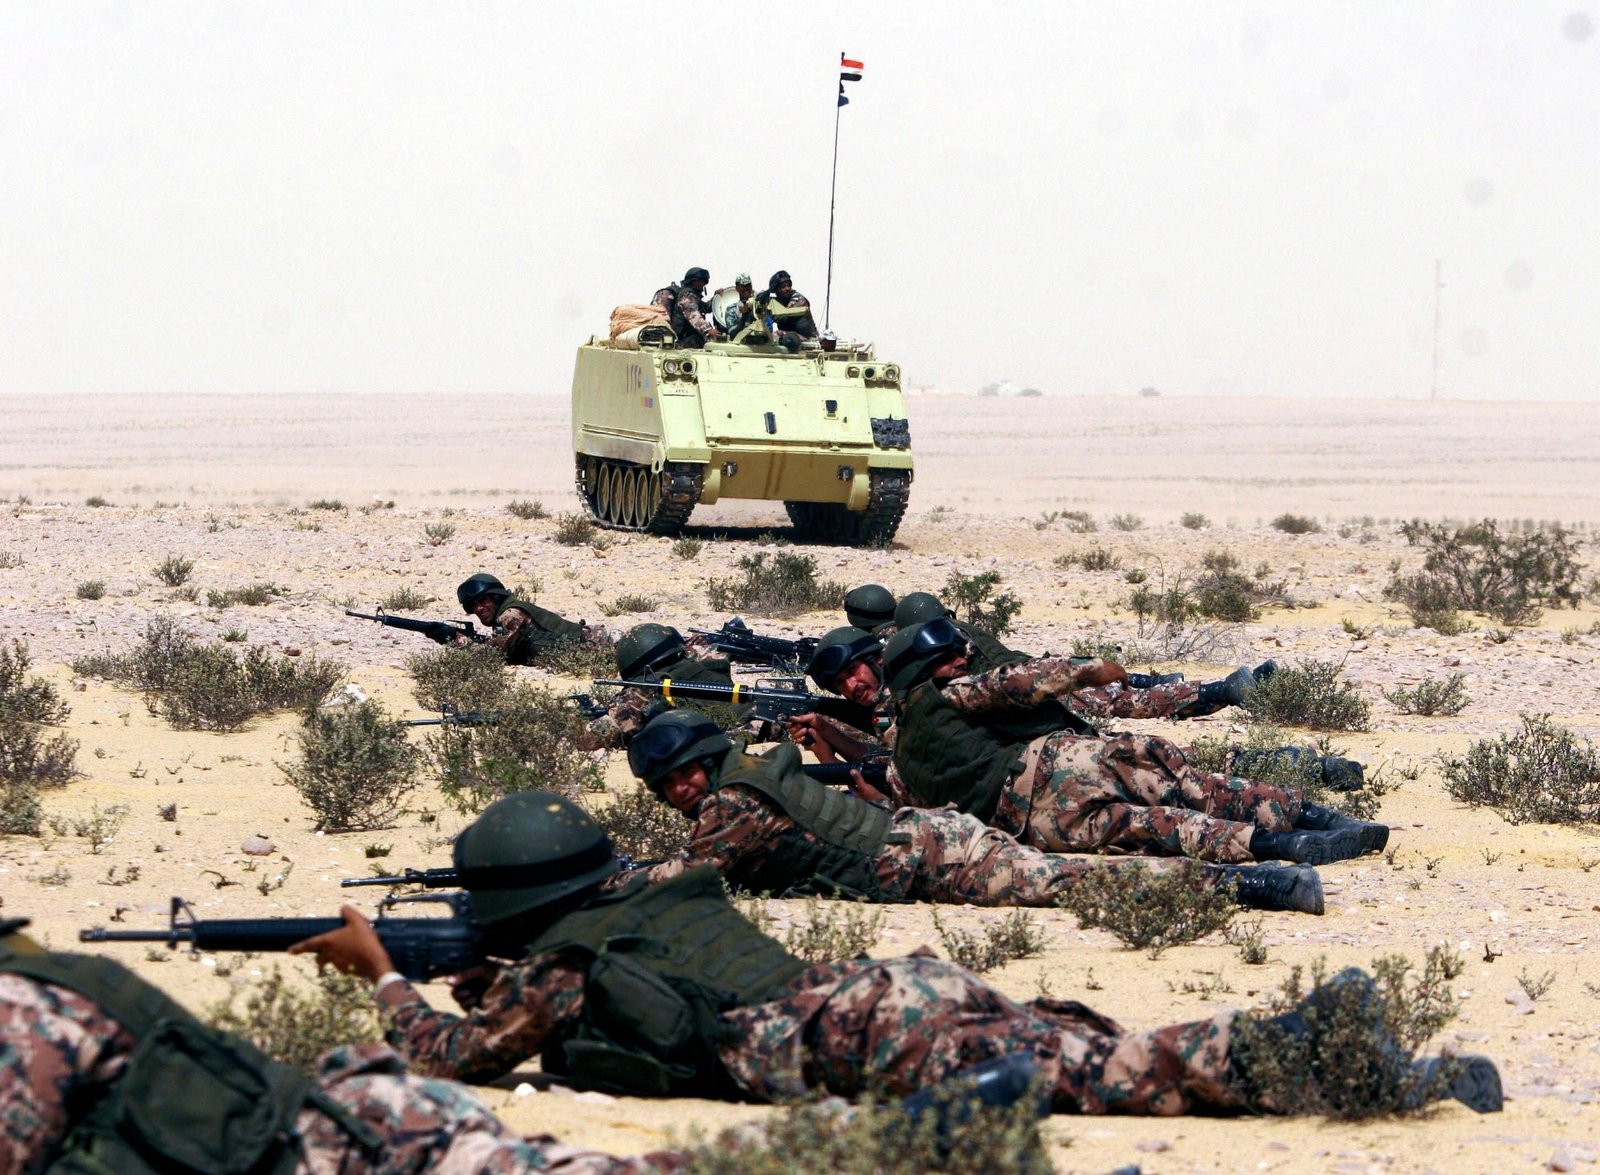  القوات المسلحه المصريه.(شامل) - صفحة 3 Egyptian+Army